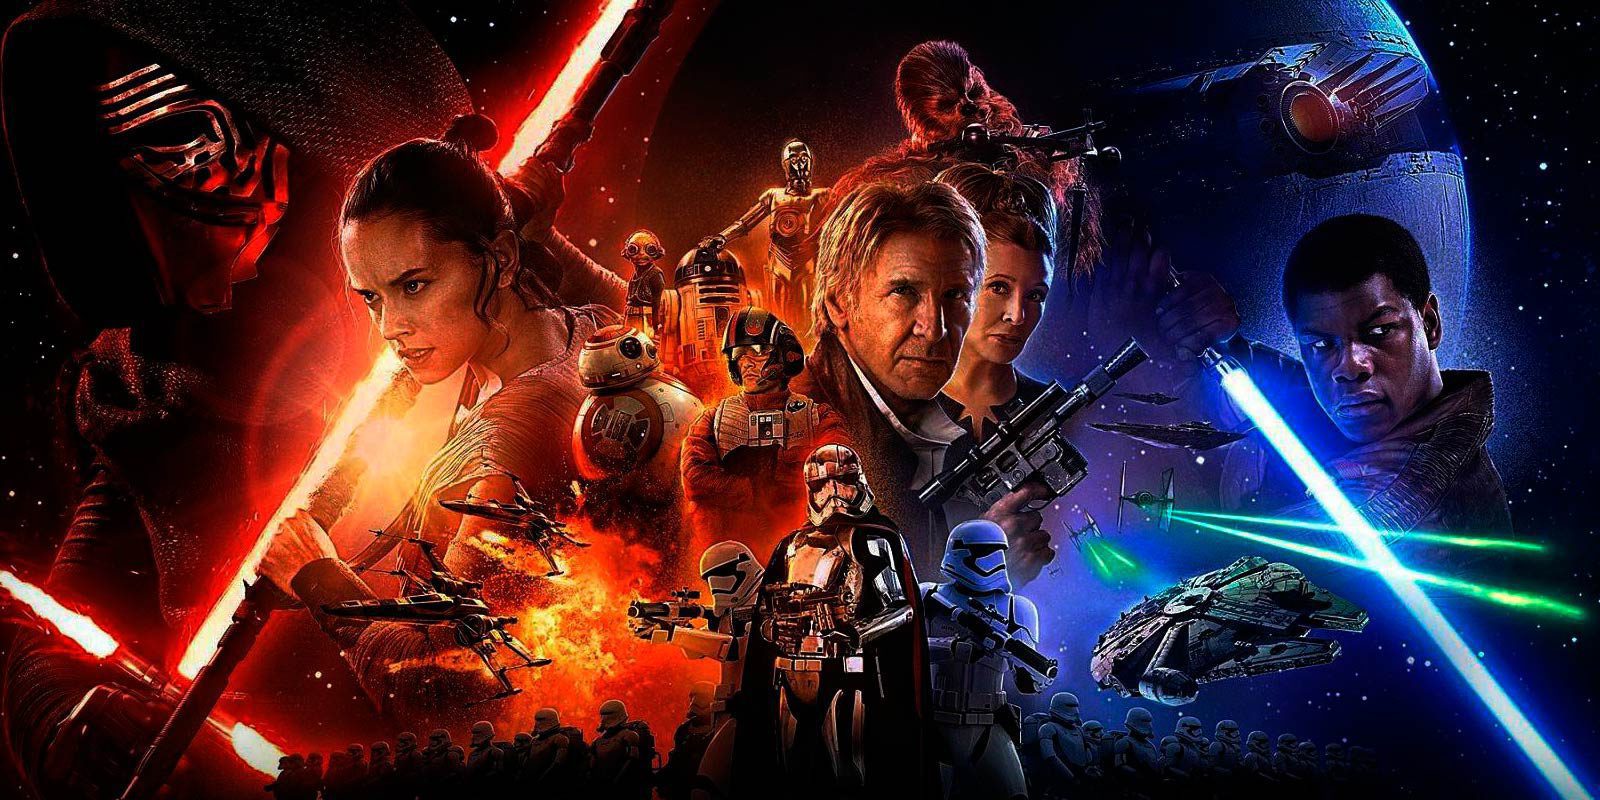 El futuro de 'Star Wars' dependerá, en parte, del éxito en taquilla de 'Rogue One'